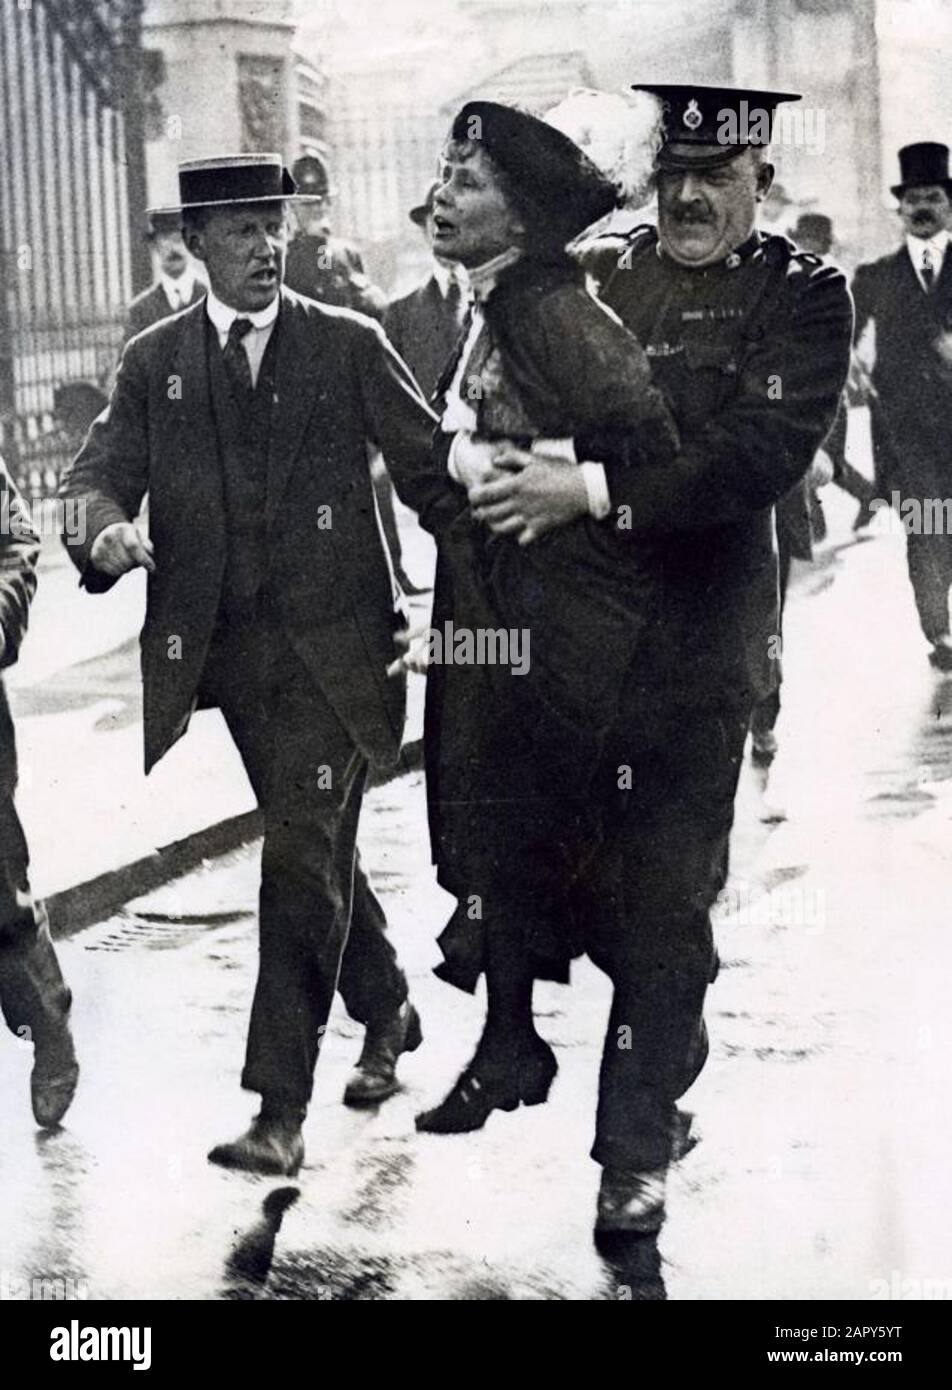 Frauenwahlrecht. Verhaftung der Suffragette Emmeline Pankhurst durch einen Polizisten aus dem Zaun des Buckingham Palace während einer Demonstration für die Emanzipation der Frau. London, England, [1907-1914]. Suffragette (Frauenrechtsbewegung) Emmeline Pankhurst wurde verhaftet, nachdem sie in der Nähe des Buckingham Palace protestiert hatte. London, England, [1907-1914]. Stockfoto